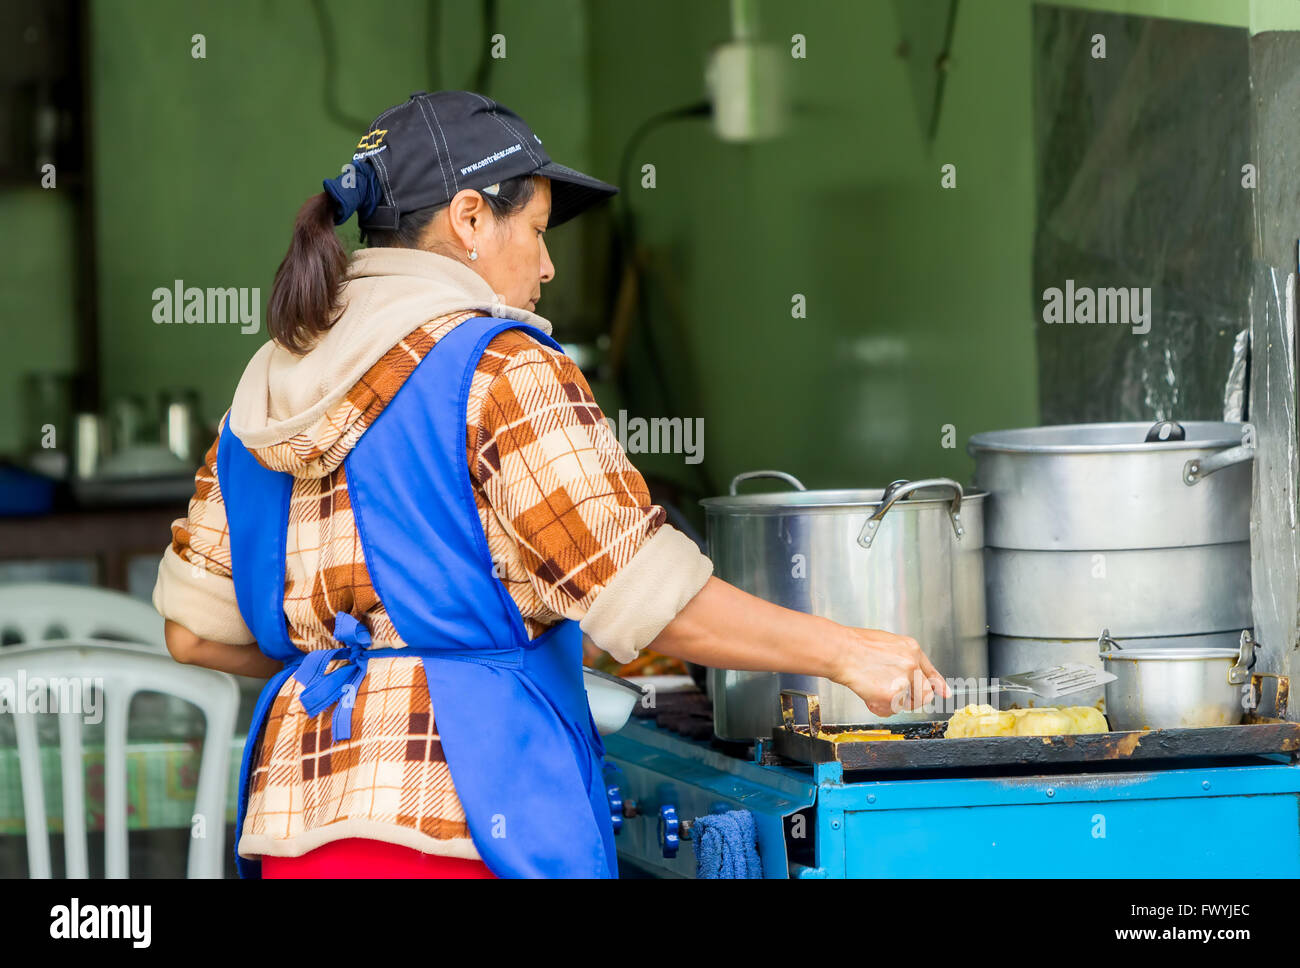 Banos De Agua Santa,  - 29 November 2014: Latin Woman Cooking On The Streets Of Banos De Agua Santa, Ecuador In Banos Stock Photo